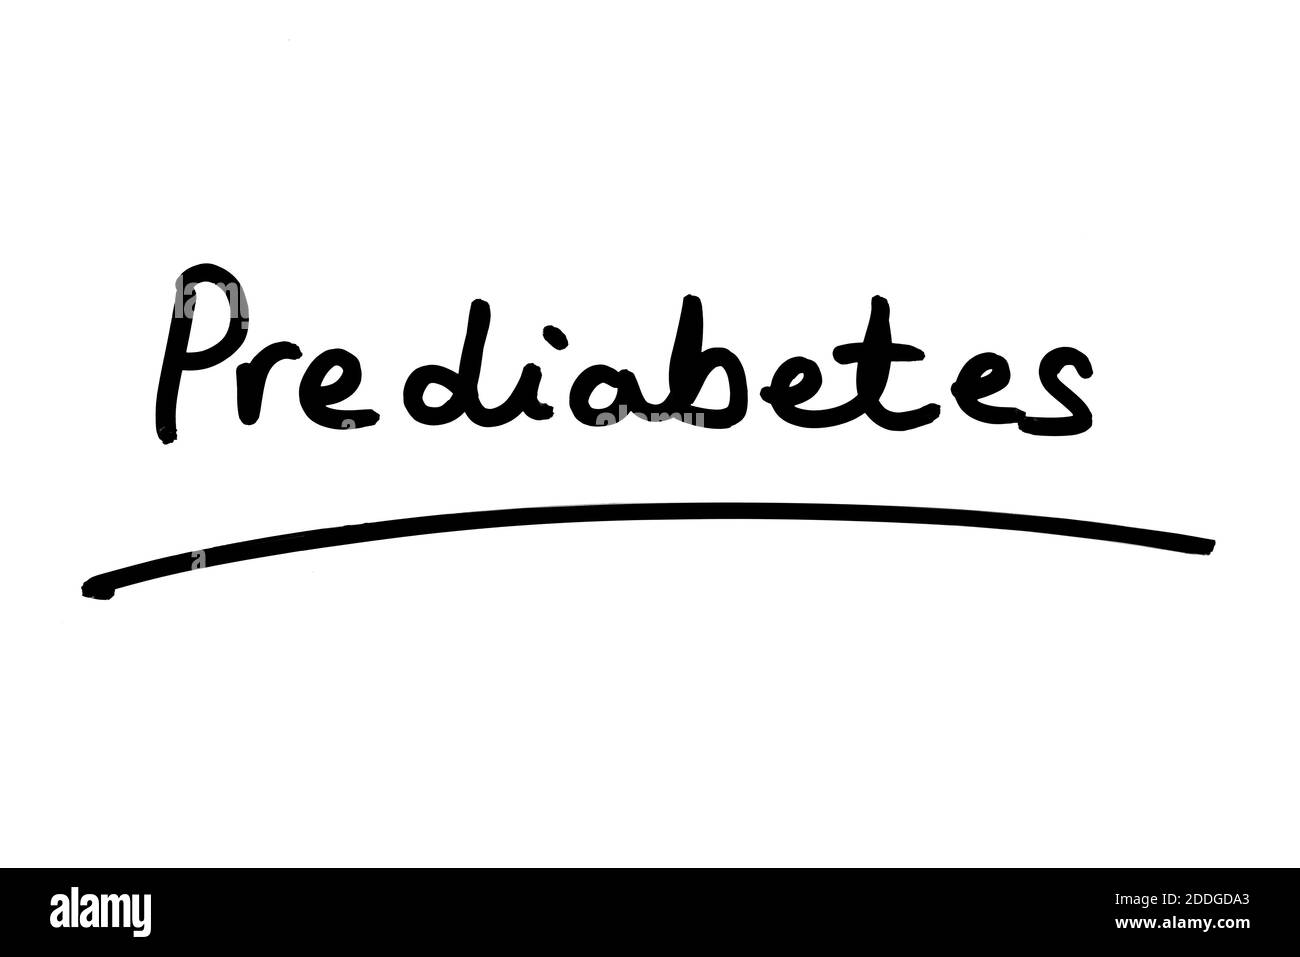 The word Prediabetes handwritten on a white background. Stock Photo